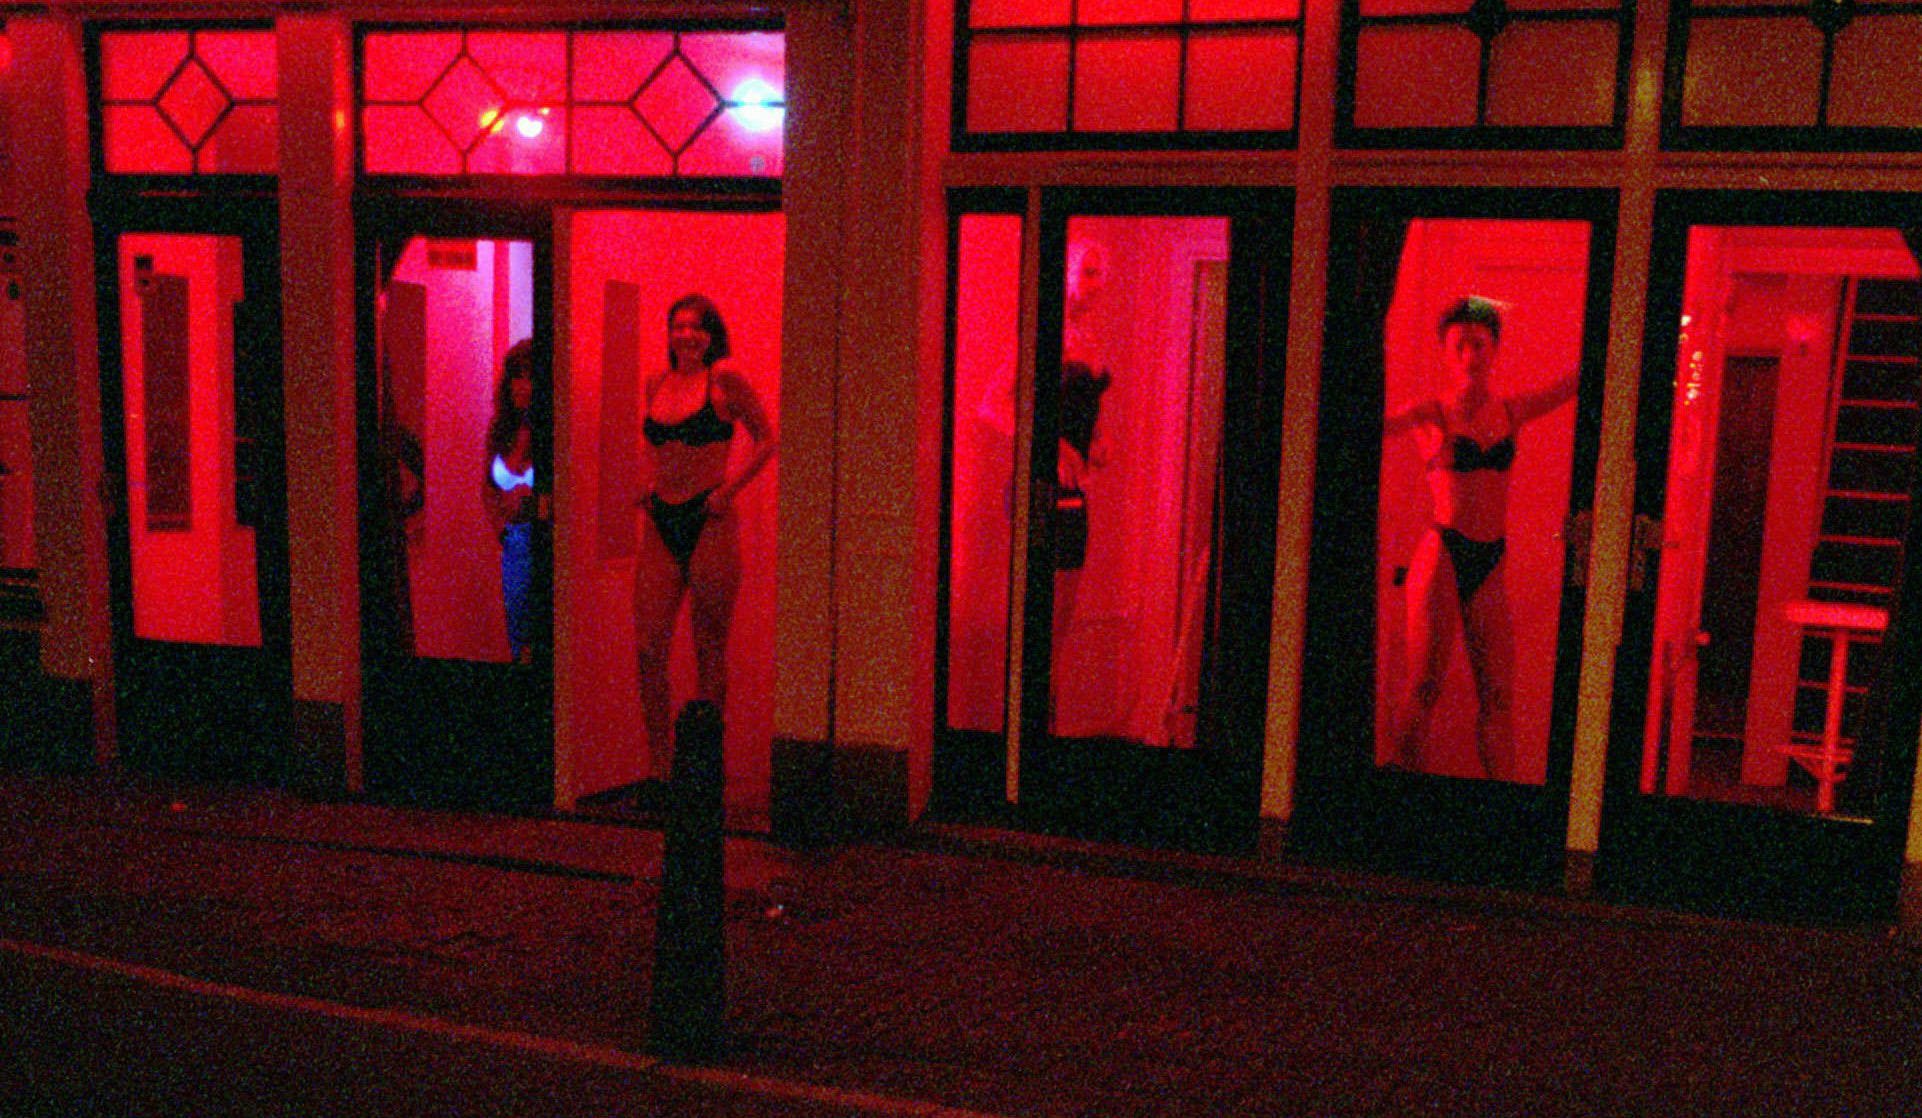 Amsterdam wil prostitutie verhuizen van de Wallen naar 'erotisch centrum'